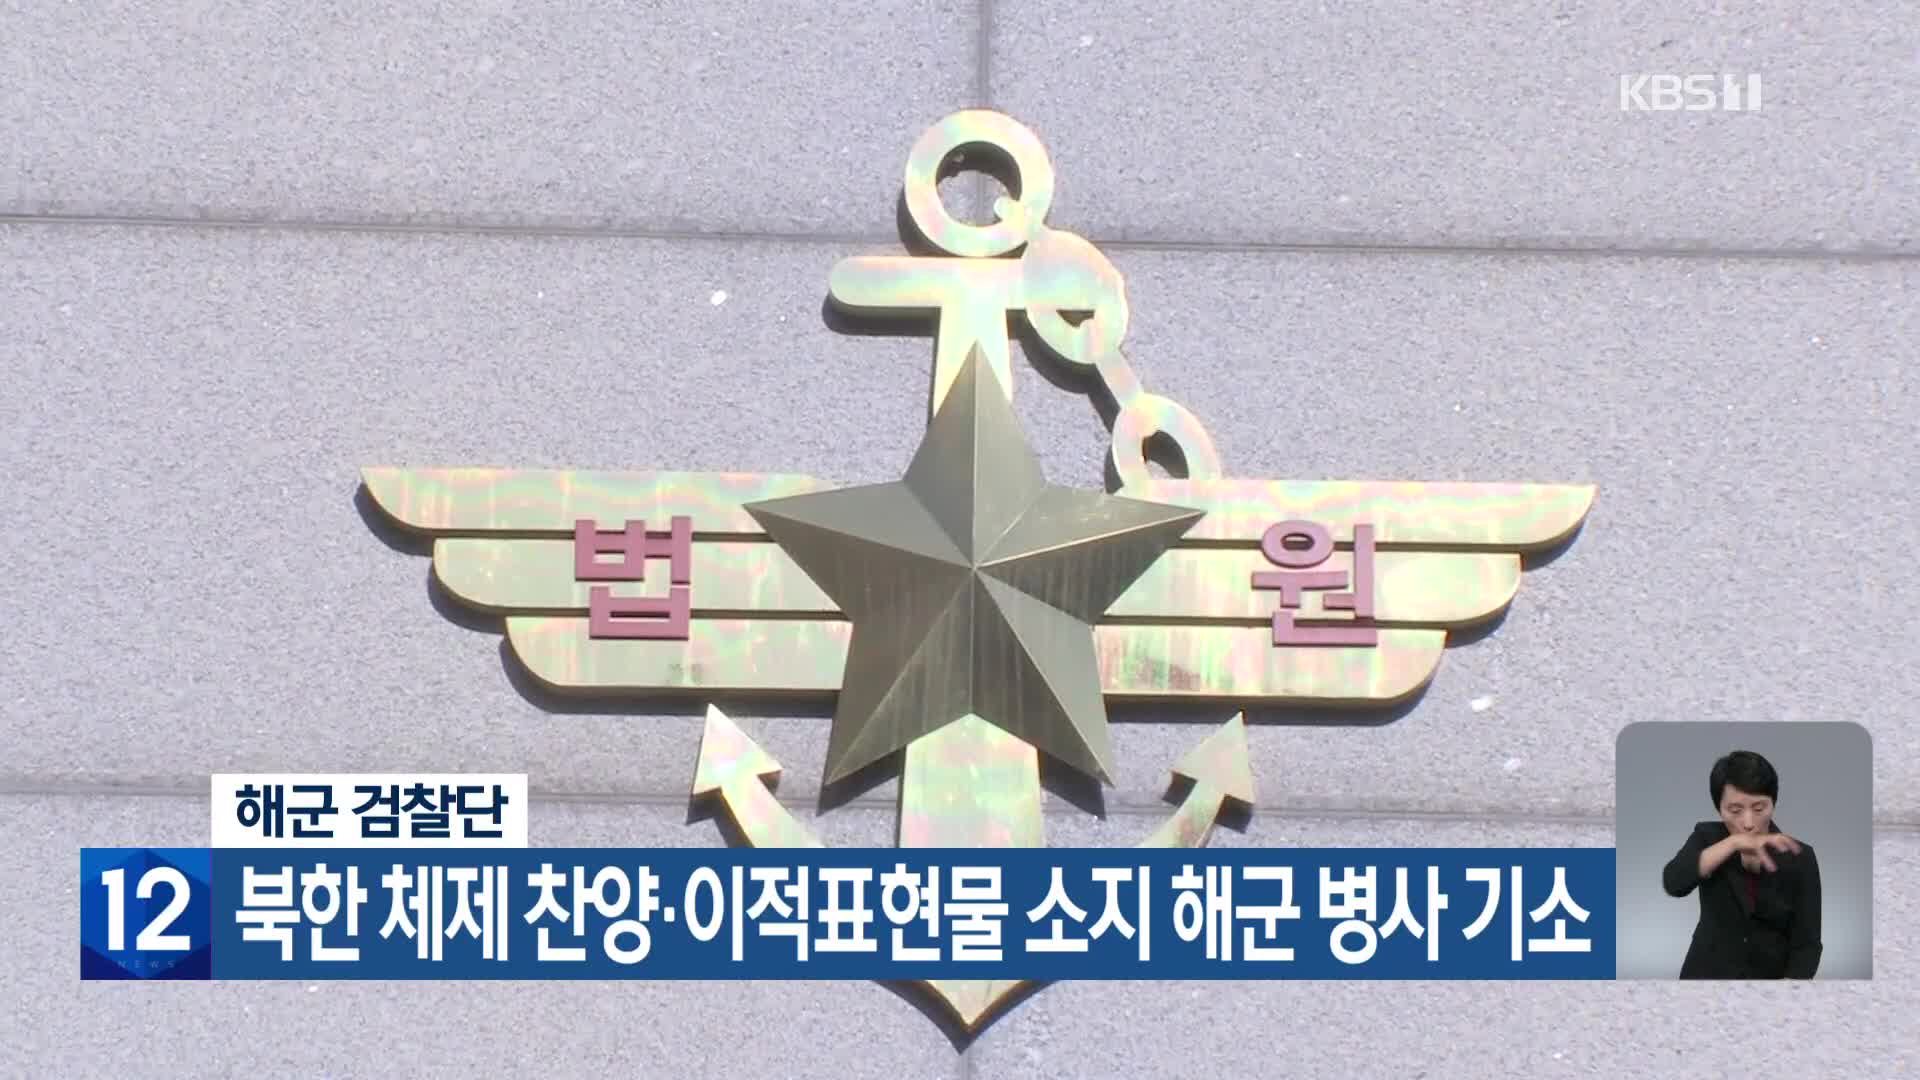 해군 검찰단, 북한 체제 찬양·이적표현물 소지 해군 병사 기소